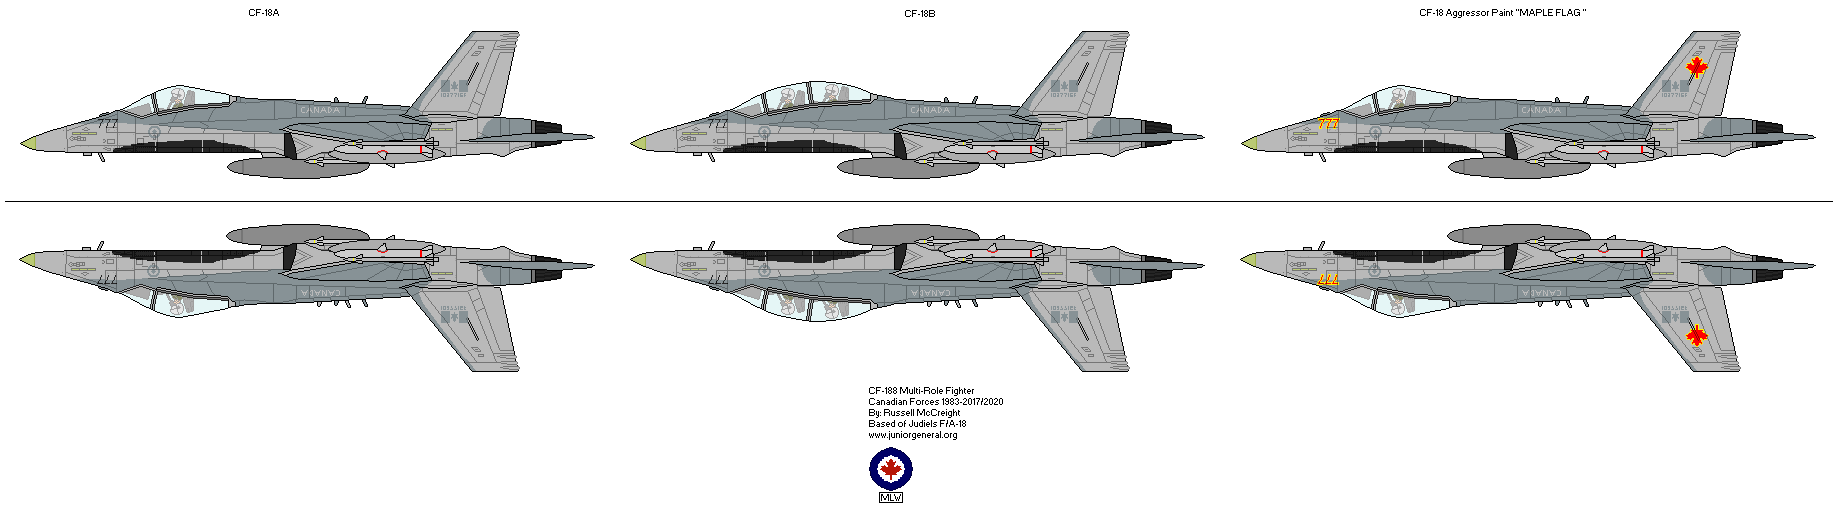 CF-188 Multi-Role Fighter